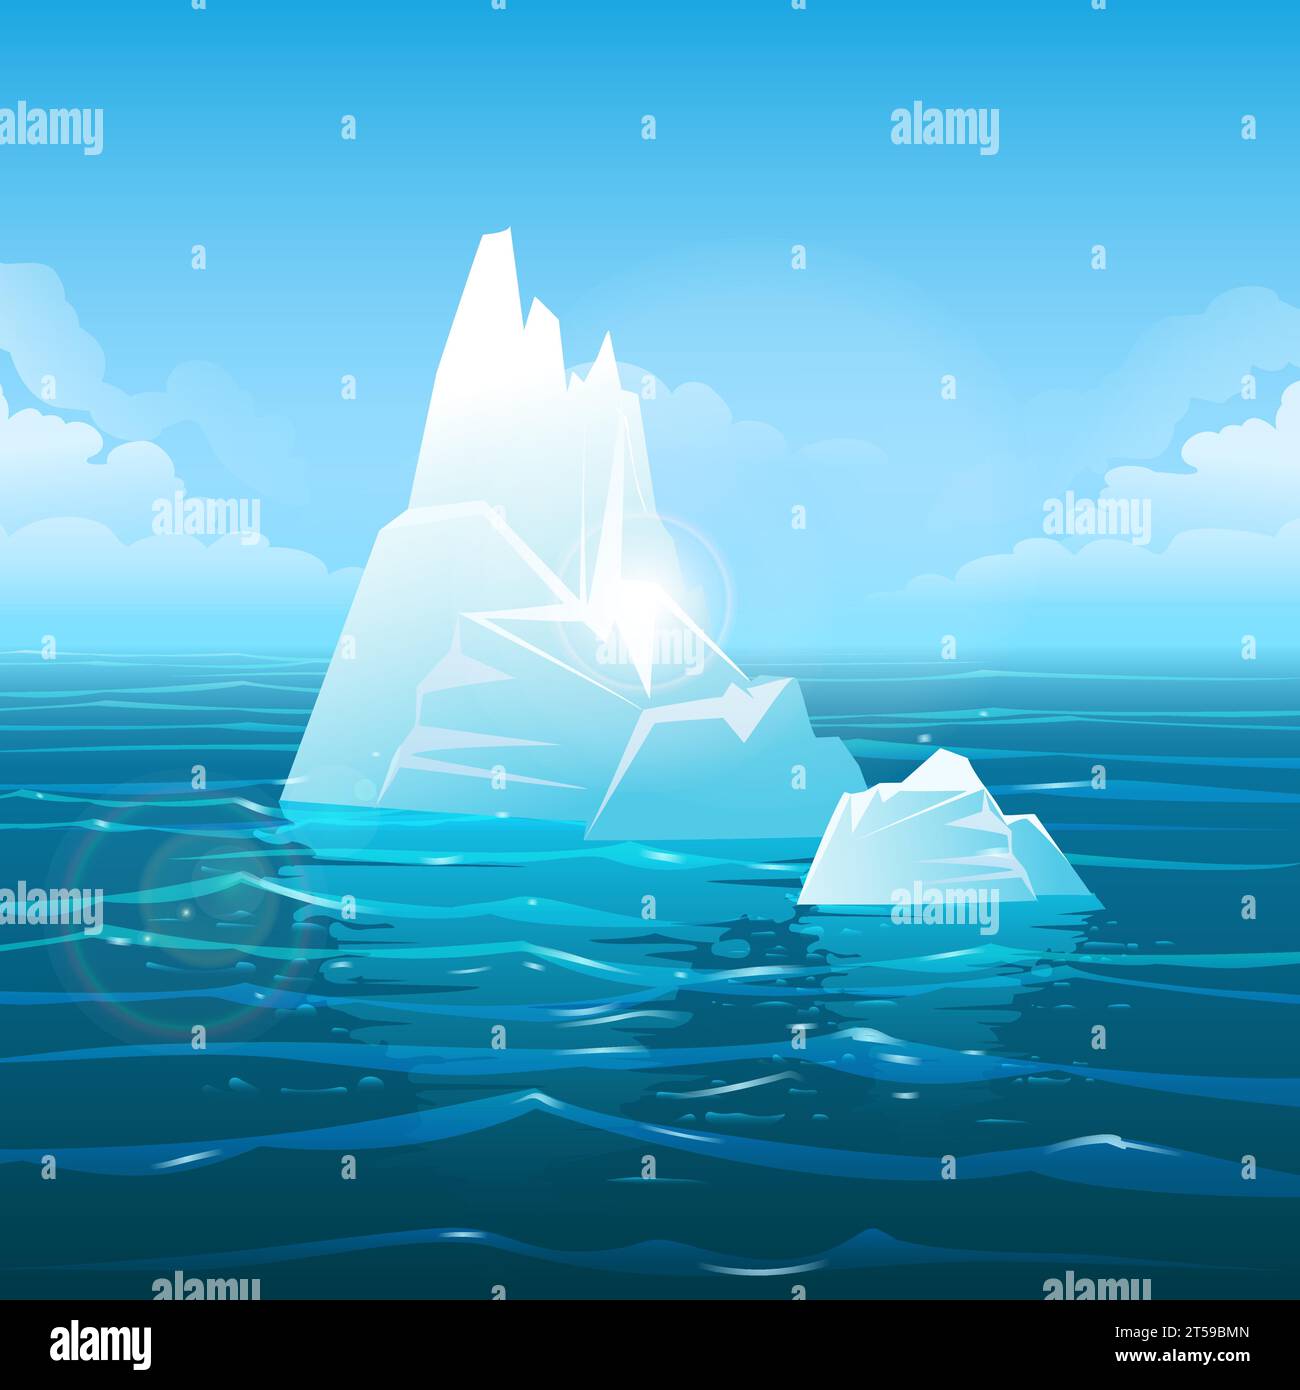 Bleu énorme Iceberg dans l'océan fond de nature sauvage illustration vectorielle Illustration de Vecteur